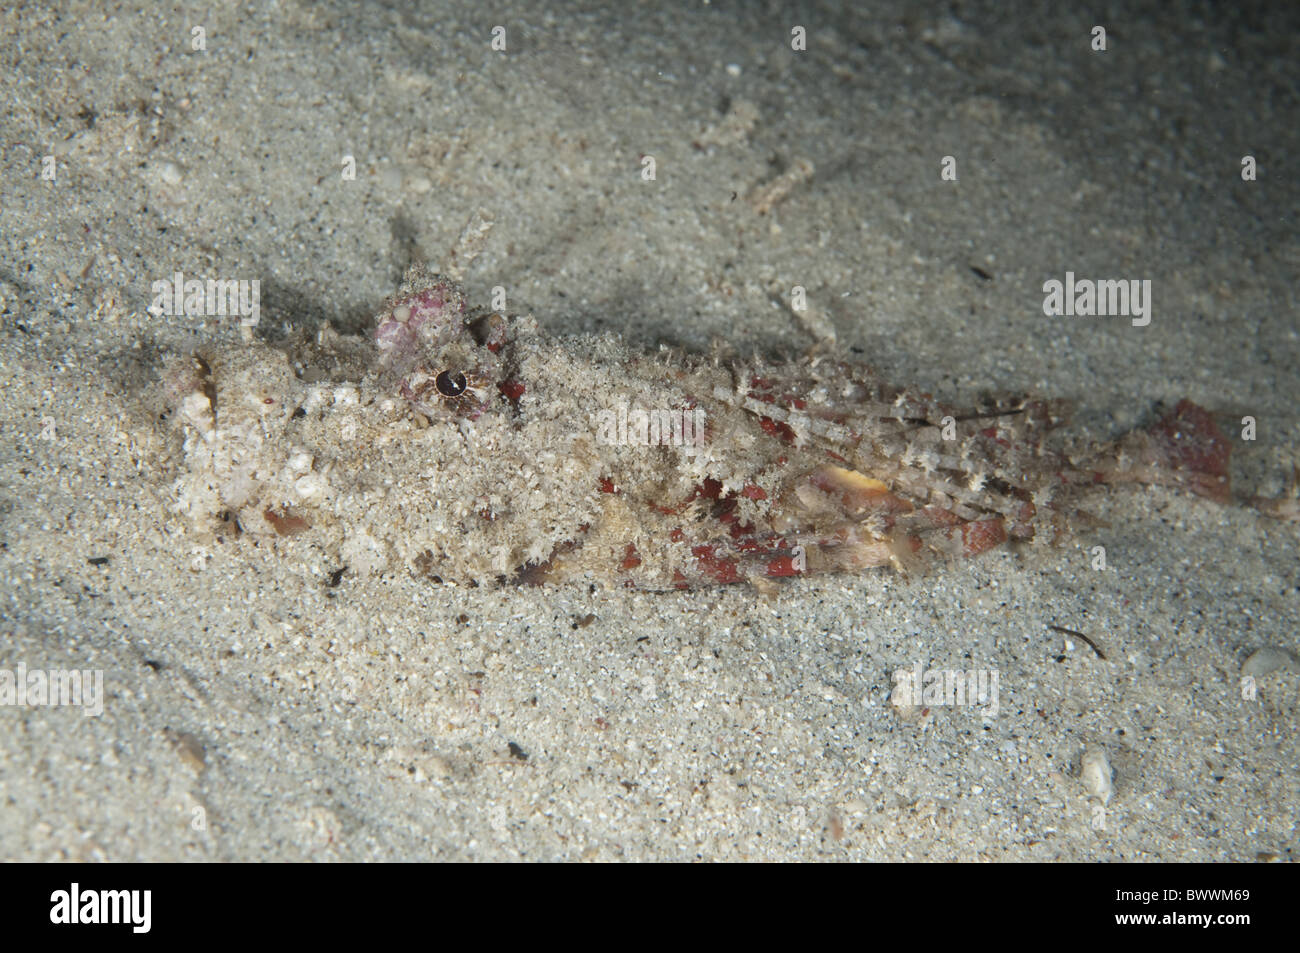 Les Devilfish Inimicus didactylus sable enterré Maluku divers poissons de corail de nuit plongée mer Marine Ambon Indonésie animal Banque D'Images